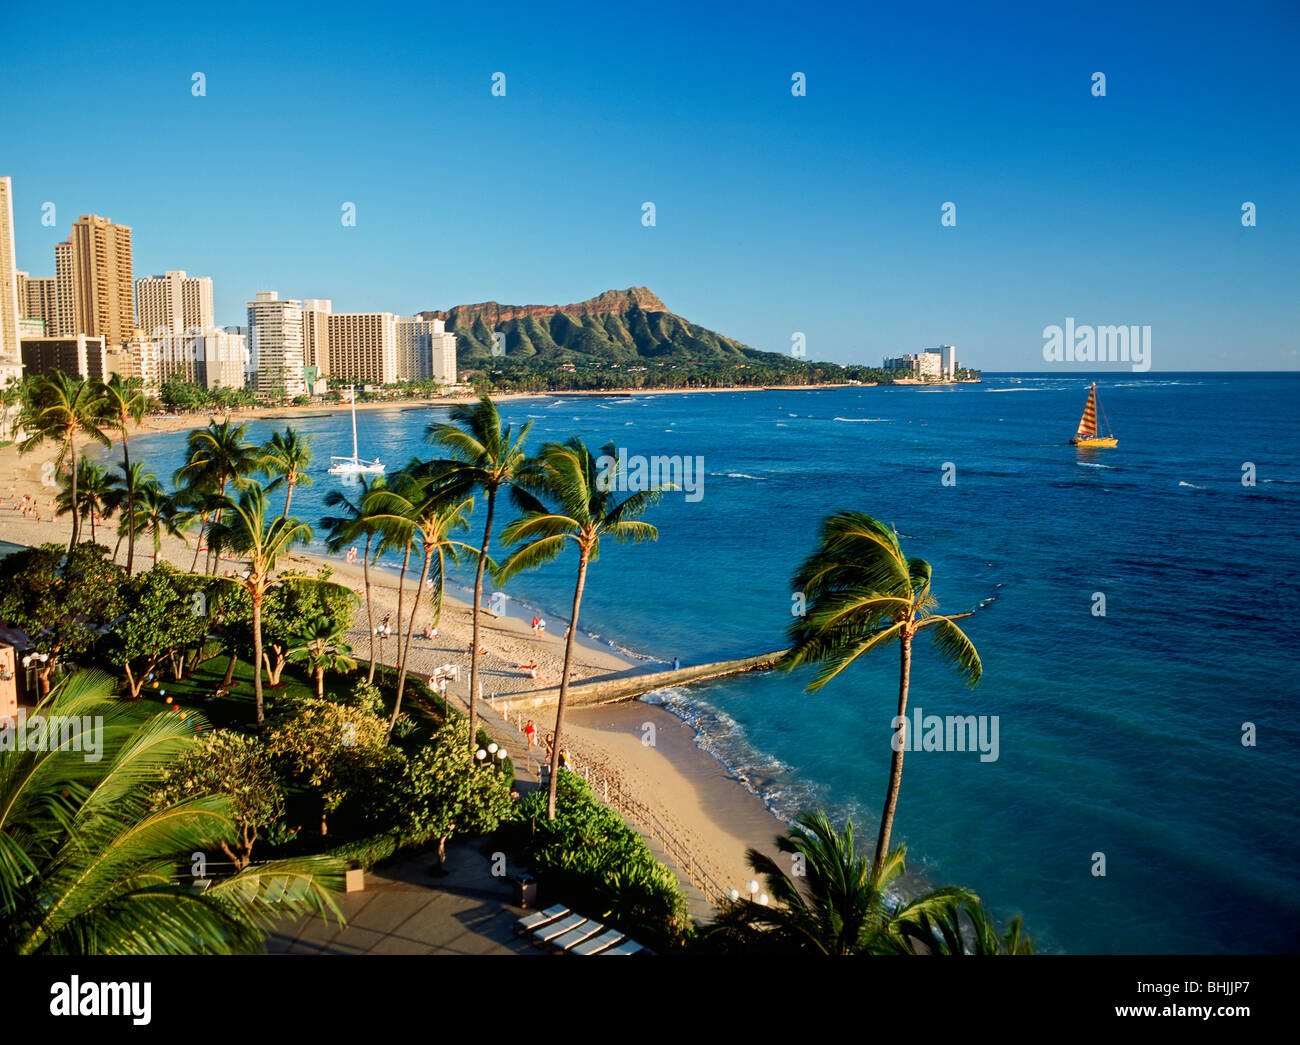 La plage de Waikiki et Diamond Head sur catamaran avec palmiers et beach front hotels sur l'île d'Oahu à Hawaii Banque D'Images